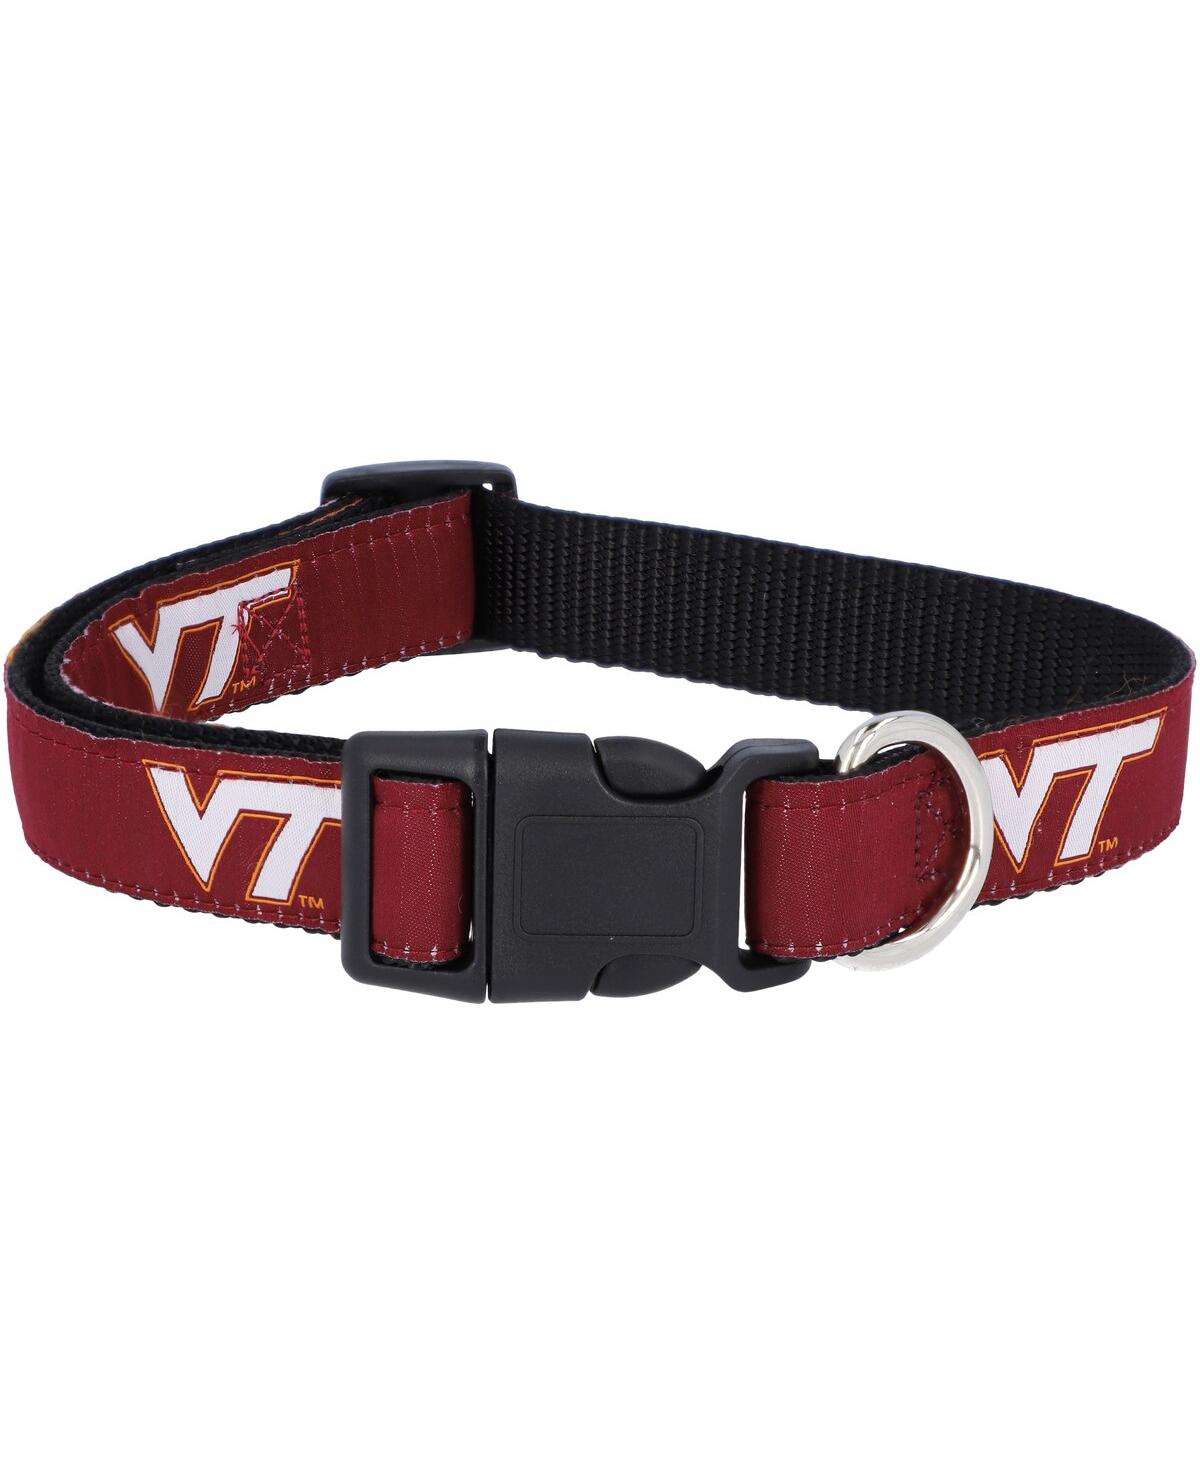 Virginia Tech Hokies 1" Regular Dog Collar - Red